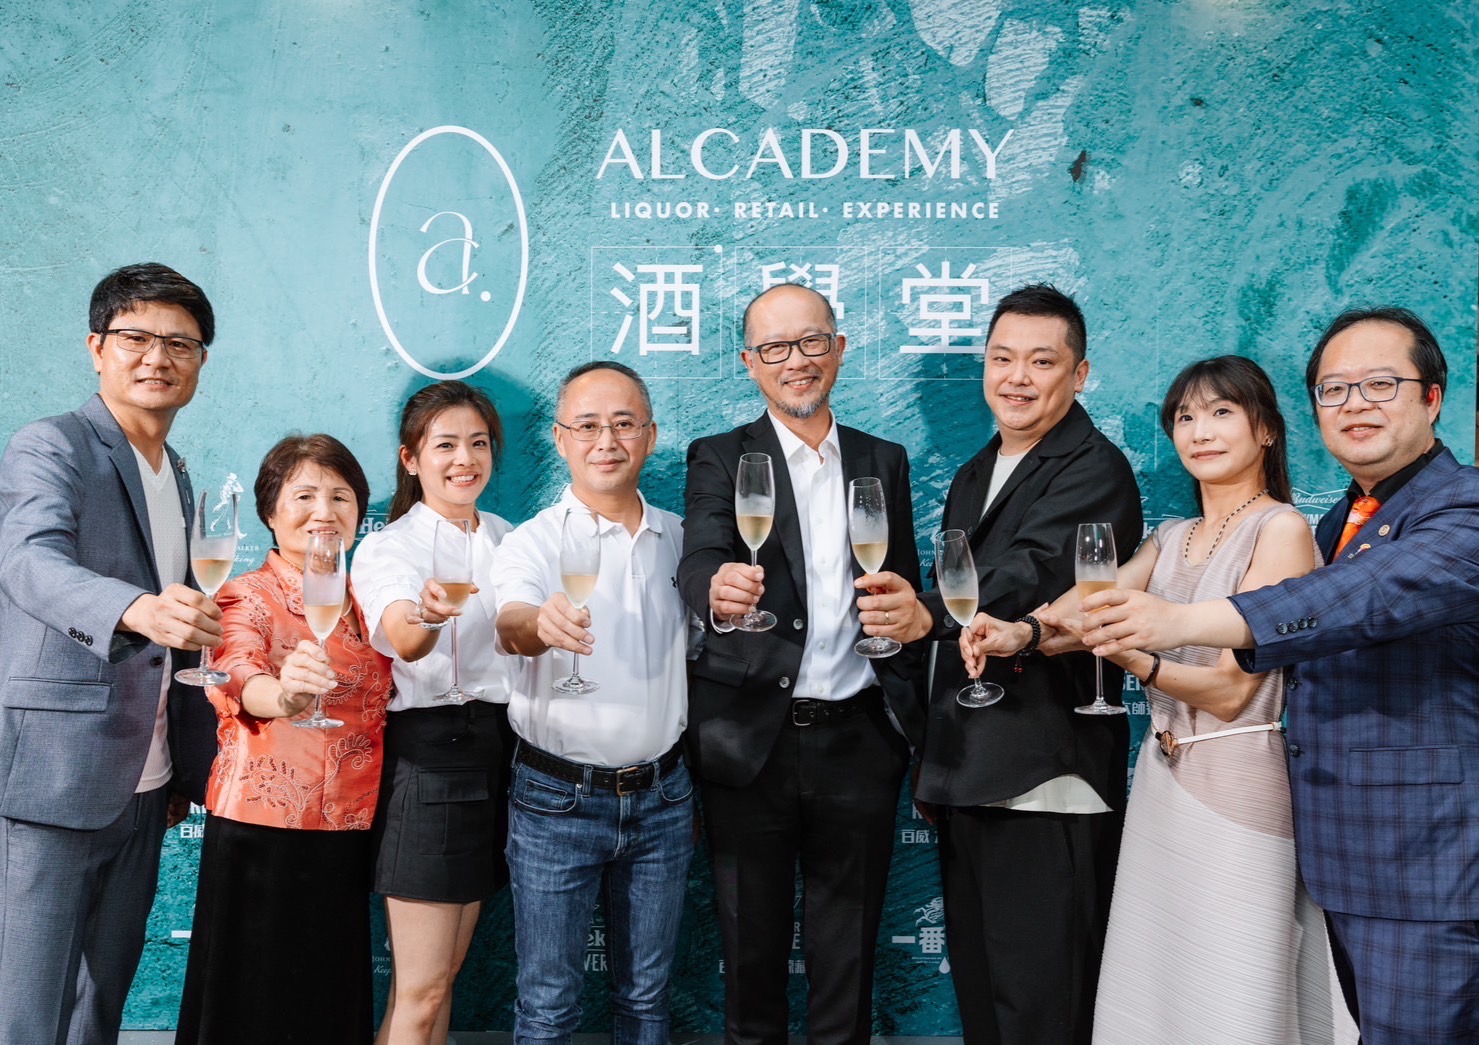 「ALcademy酒學堂」複合式酒品專門店台北天母盛大開幕